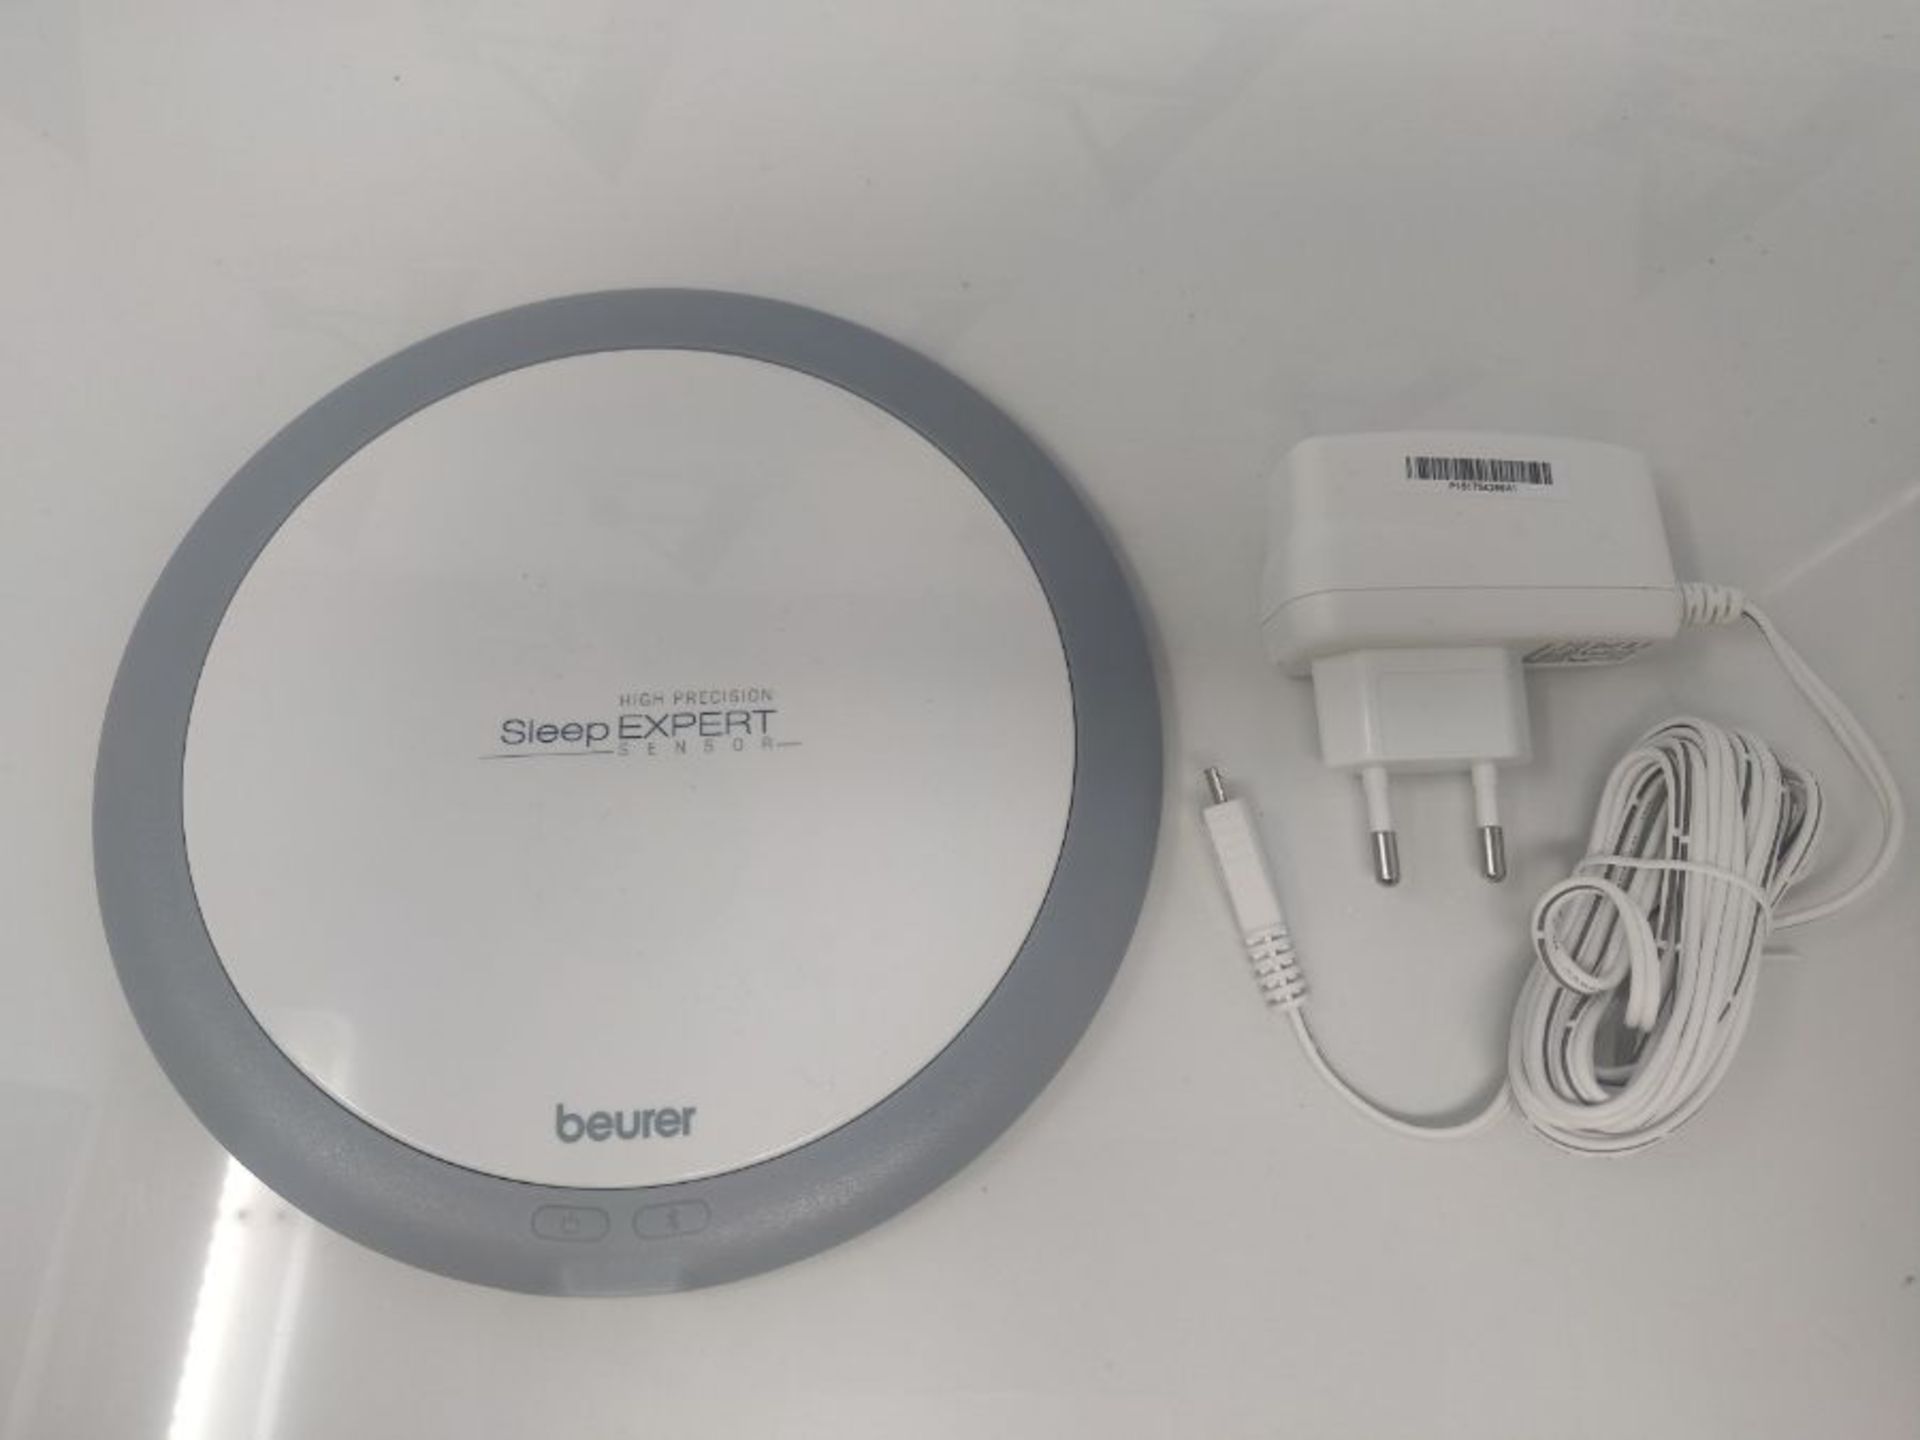 RRP £124.00 Beurer SleepExpert SE 80 with Sleep Glass Sleep Sensor for Professional Sleep Analysis - Image 3 of 3